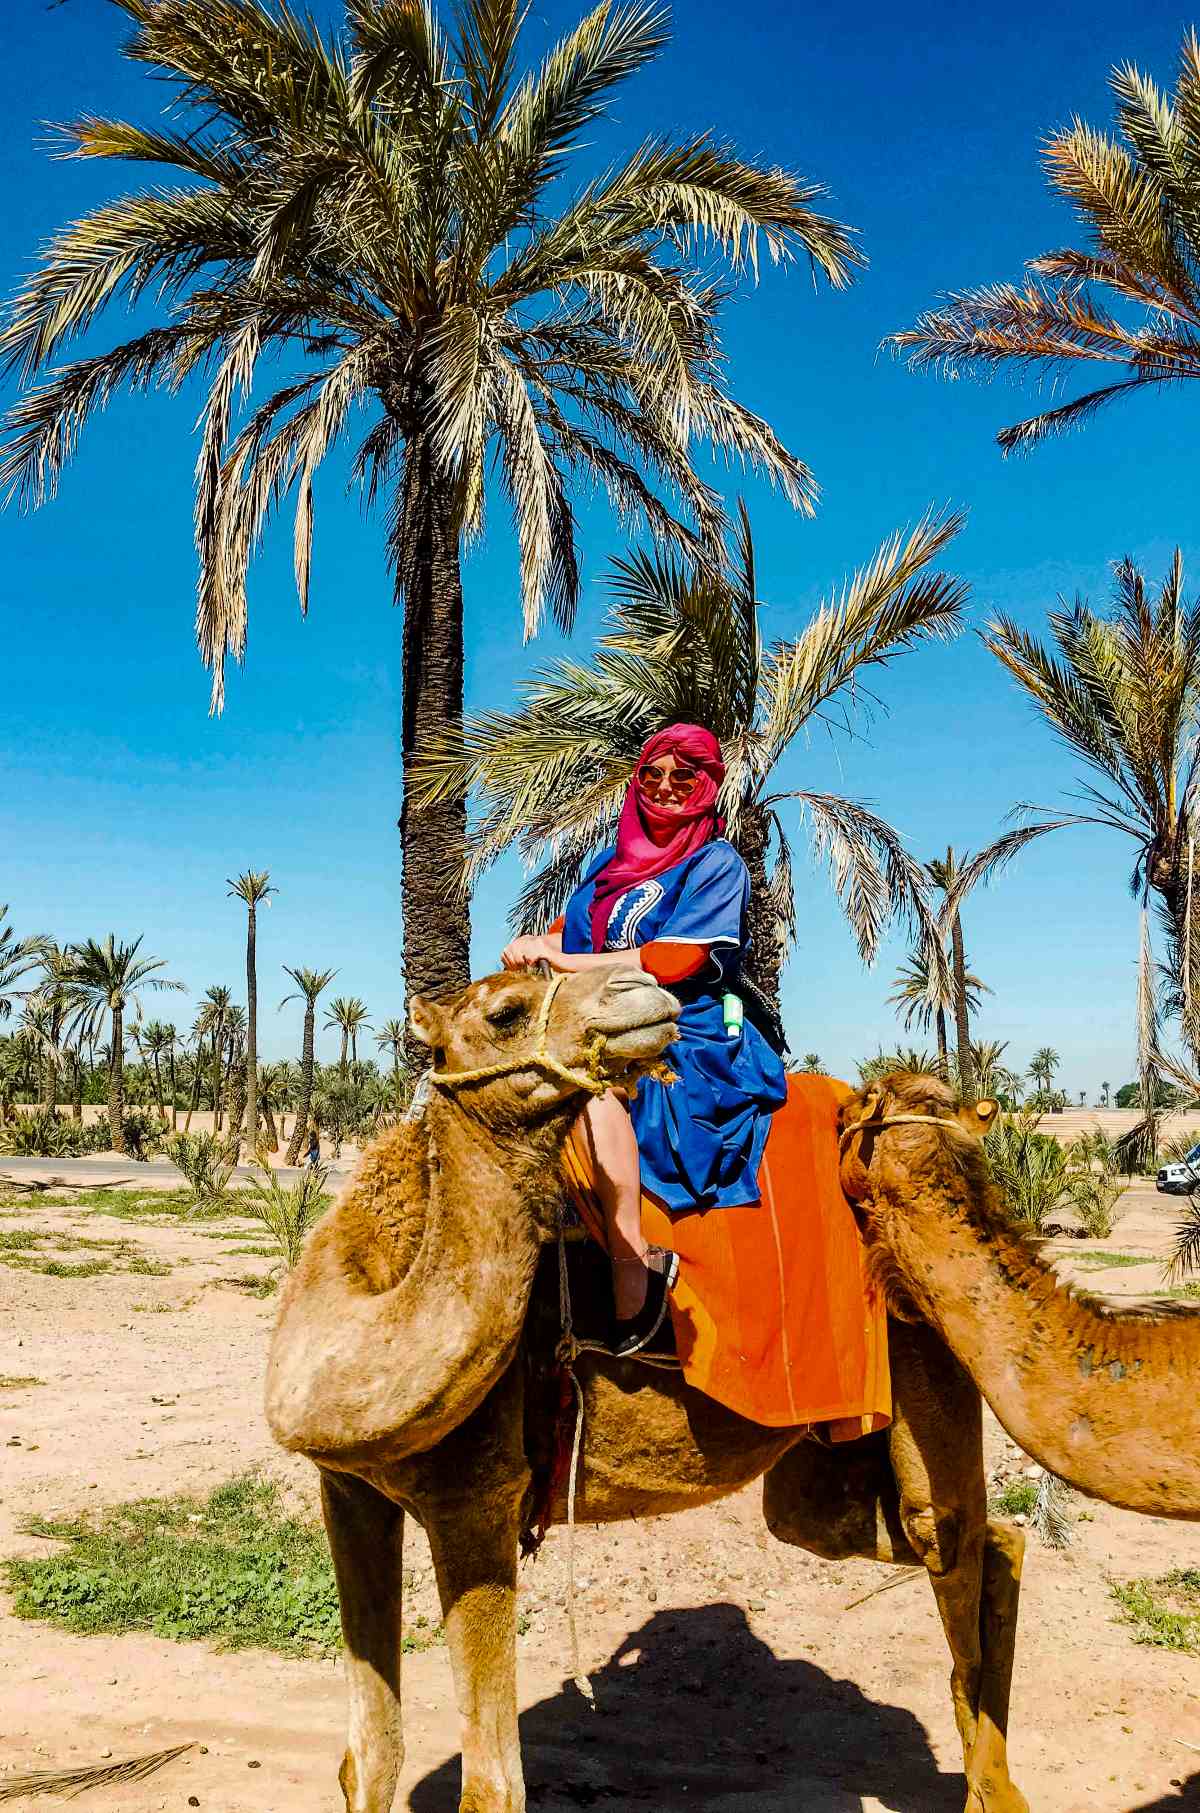 A woman riding a camel in Marrakech.